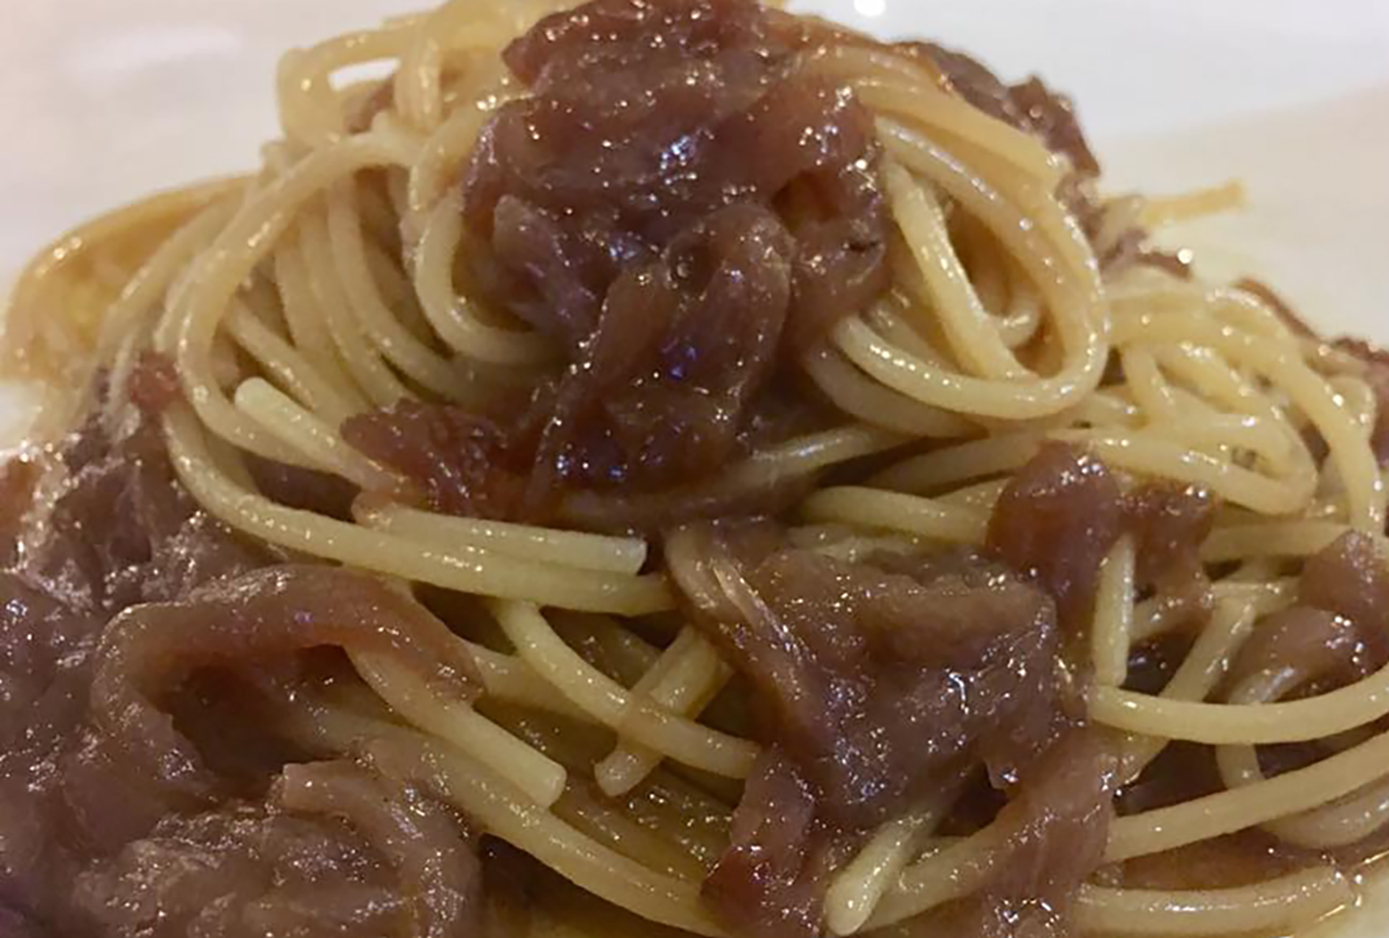 spaghetti-a’-sapunariello,-l’antica-ricetta-napoletana-dimenticata-con-2-ingredienti.-piu-buona-dell’aglio-e-olio